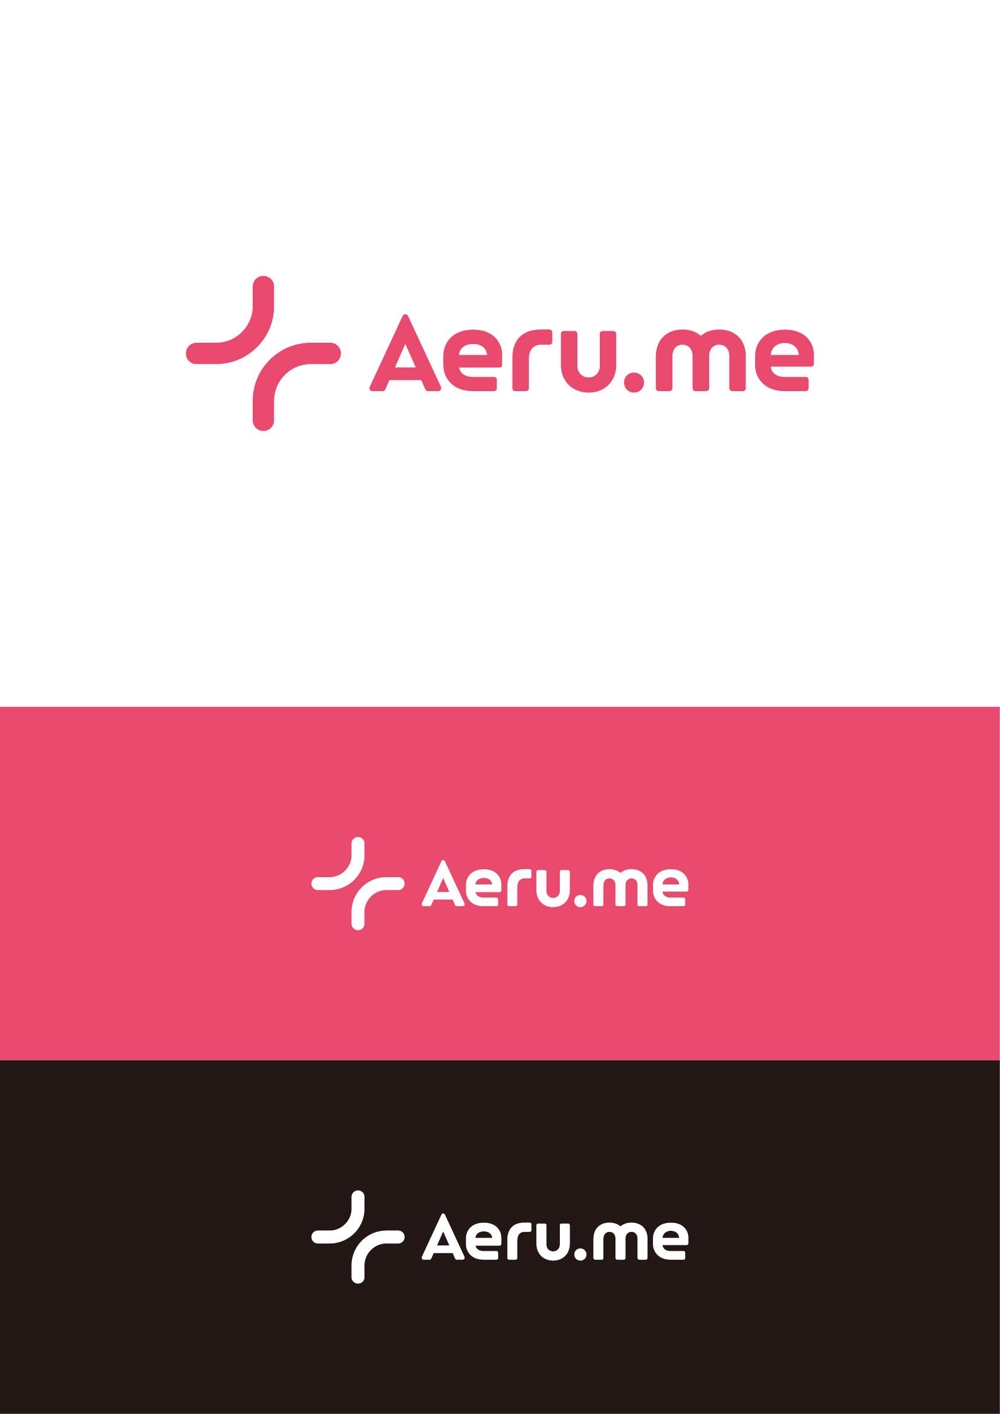 少し憧れな人と会えるマッチングサイト「Aeru.me」のロゴ